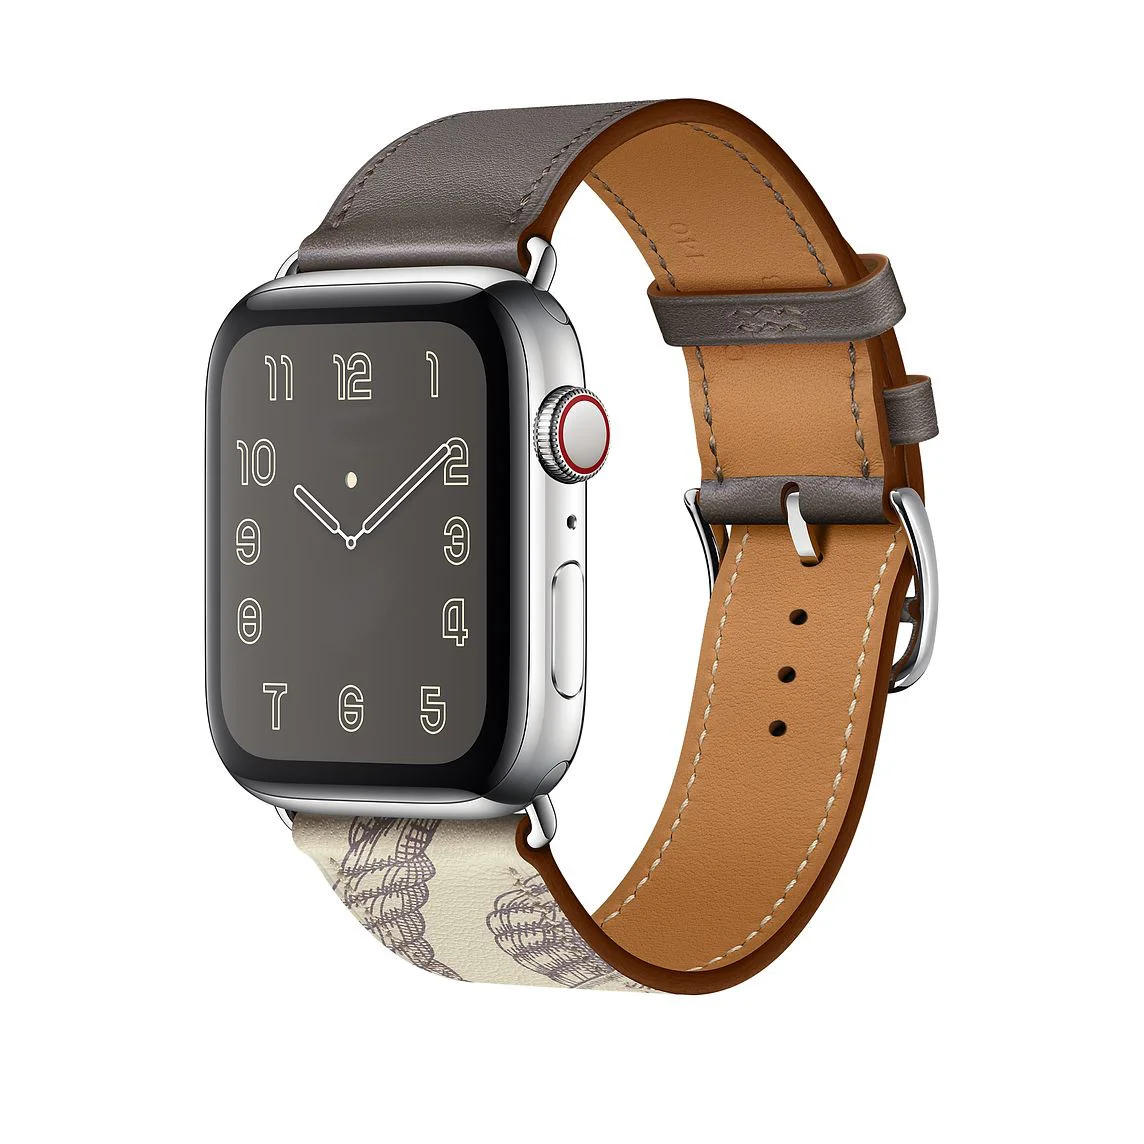 Řemínek iMore Single Tour Apple Watch Series 4/5/6/SE (44mm) - Cín/Beton